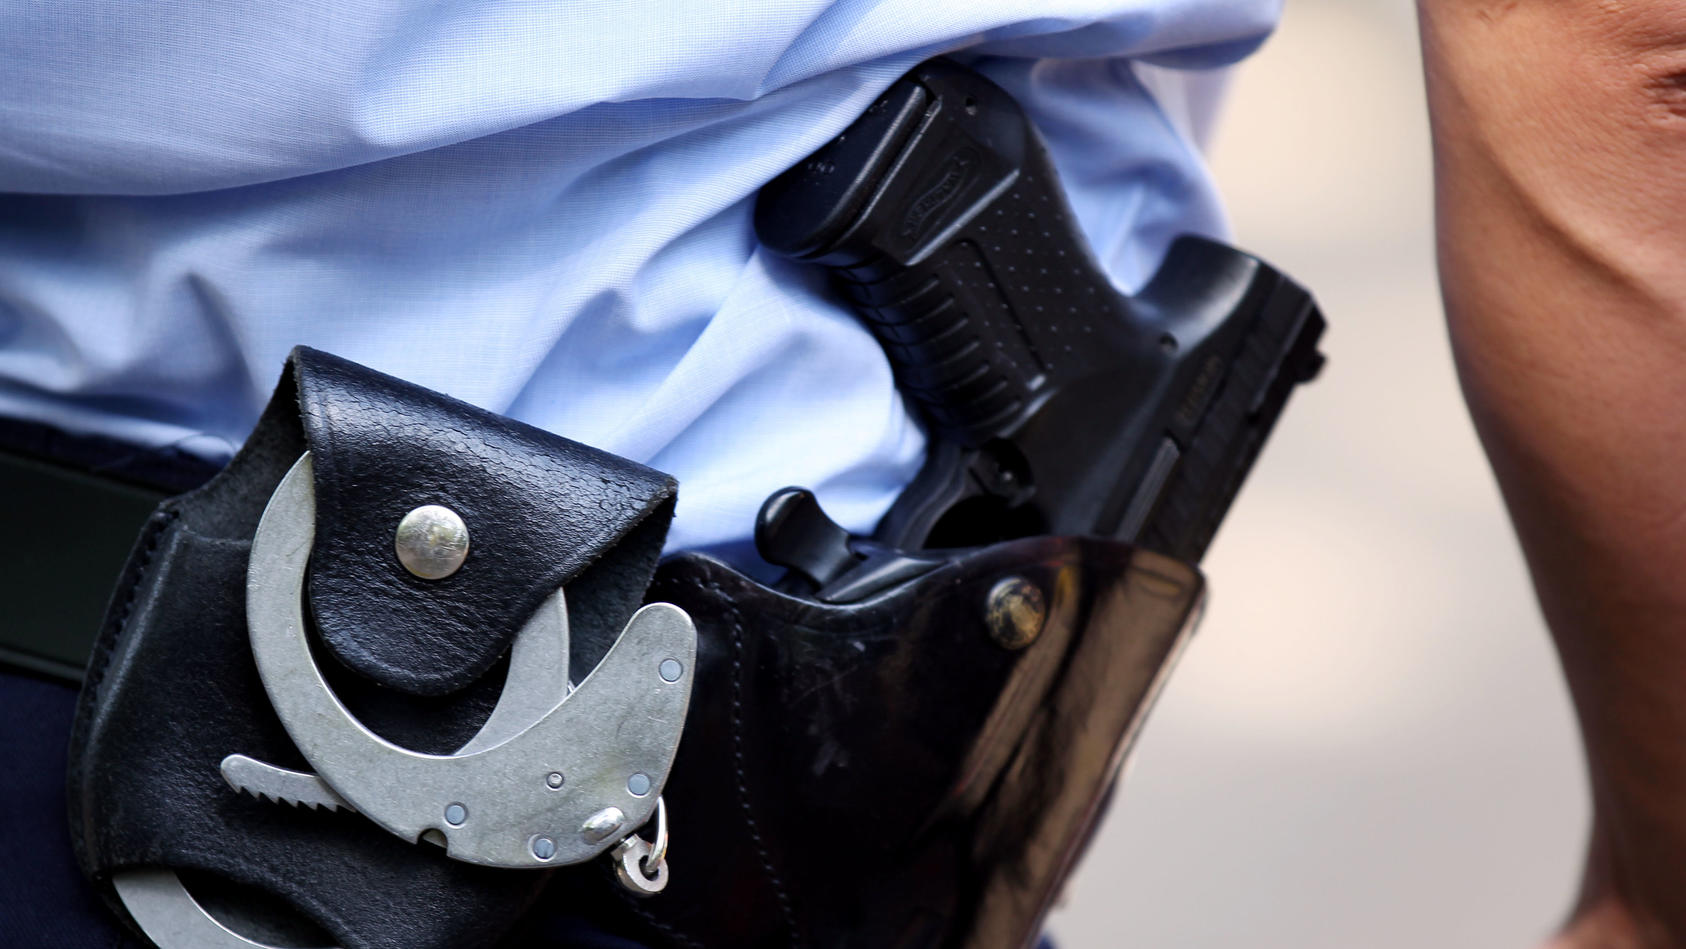 ARCHIV - 28.06.2011, Nordrhein-Westfalen, Köln: Ein Polizist trägt Handschellen und seine Dienstwaffe bei sich. Im Jahr 2022 sind in Sachsen zwei Menschen nach Schüssen aus Polizeiwaffen ums Leben gekommen. (zu dpa «Zwei Menschen 2022 nach Schusswaff